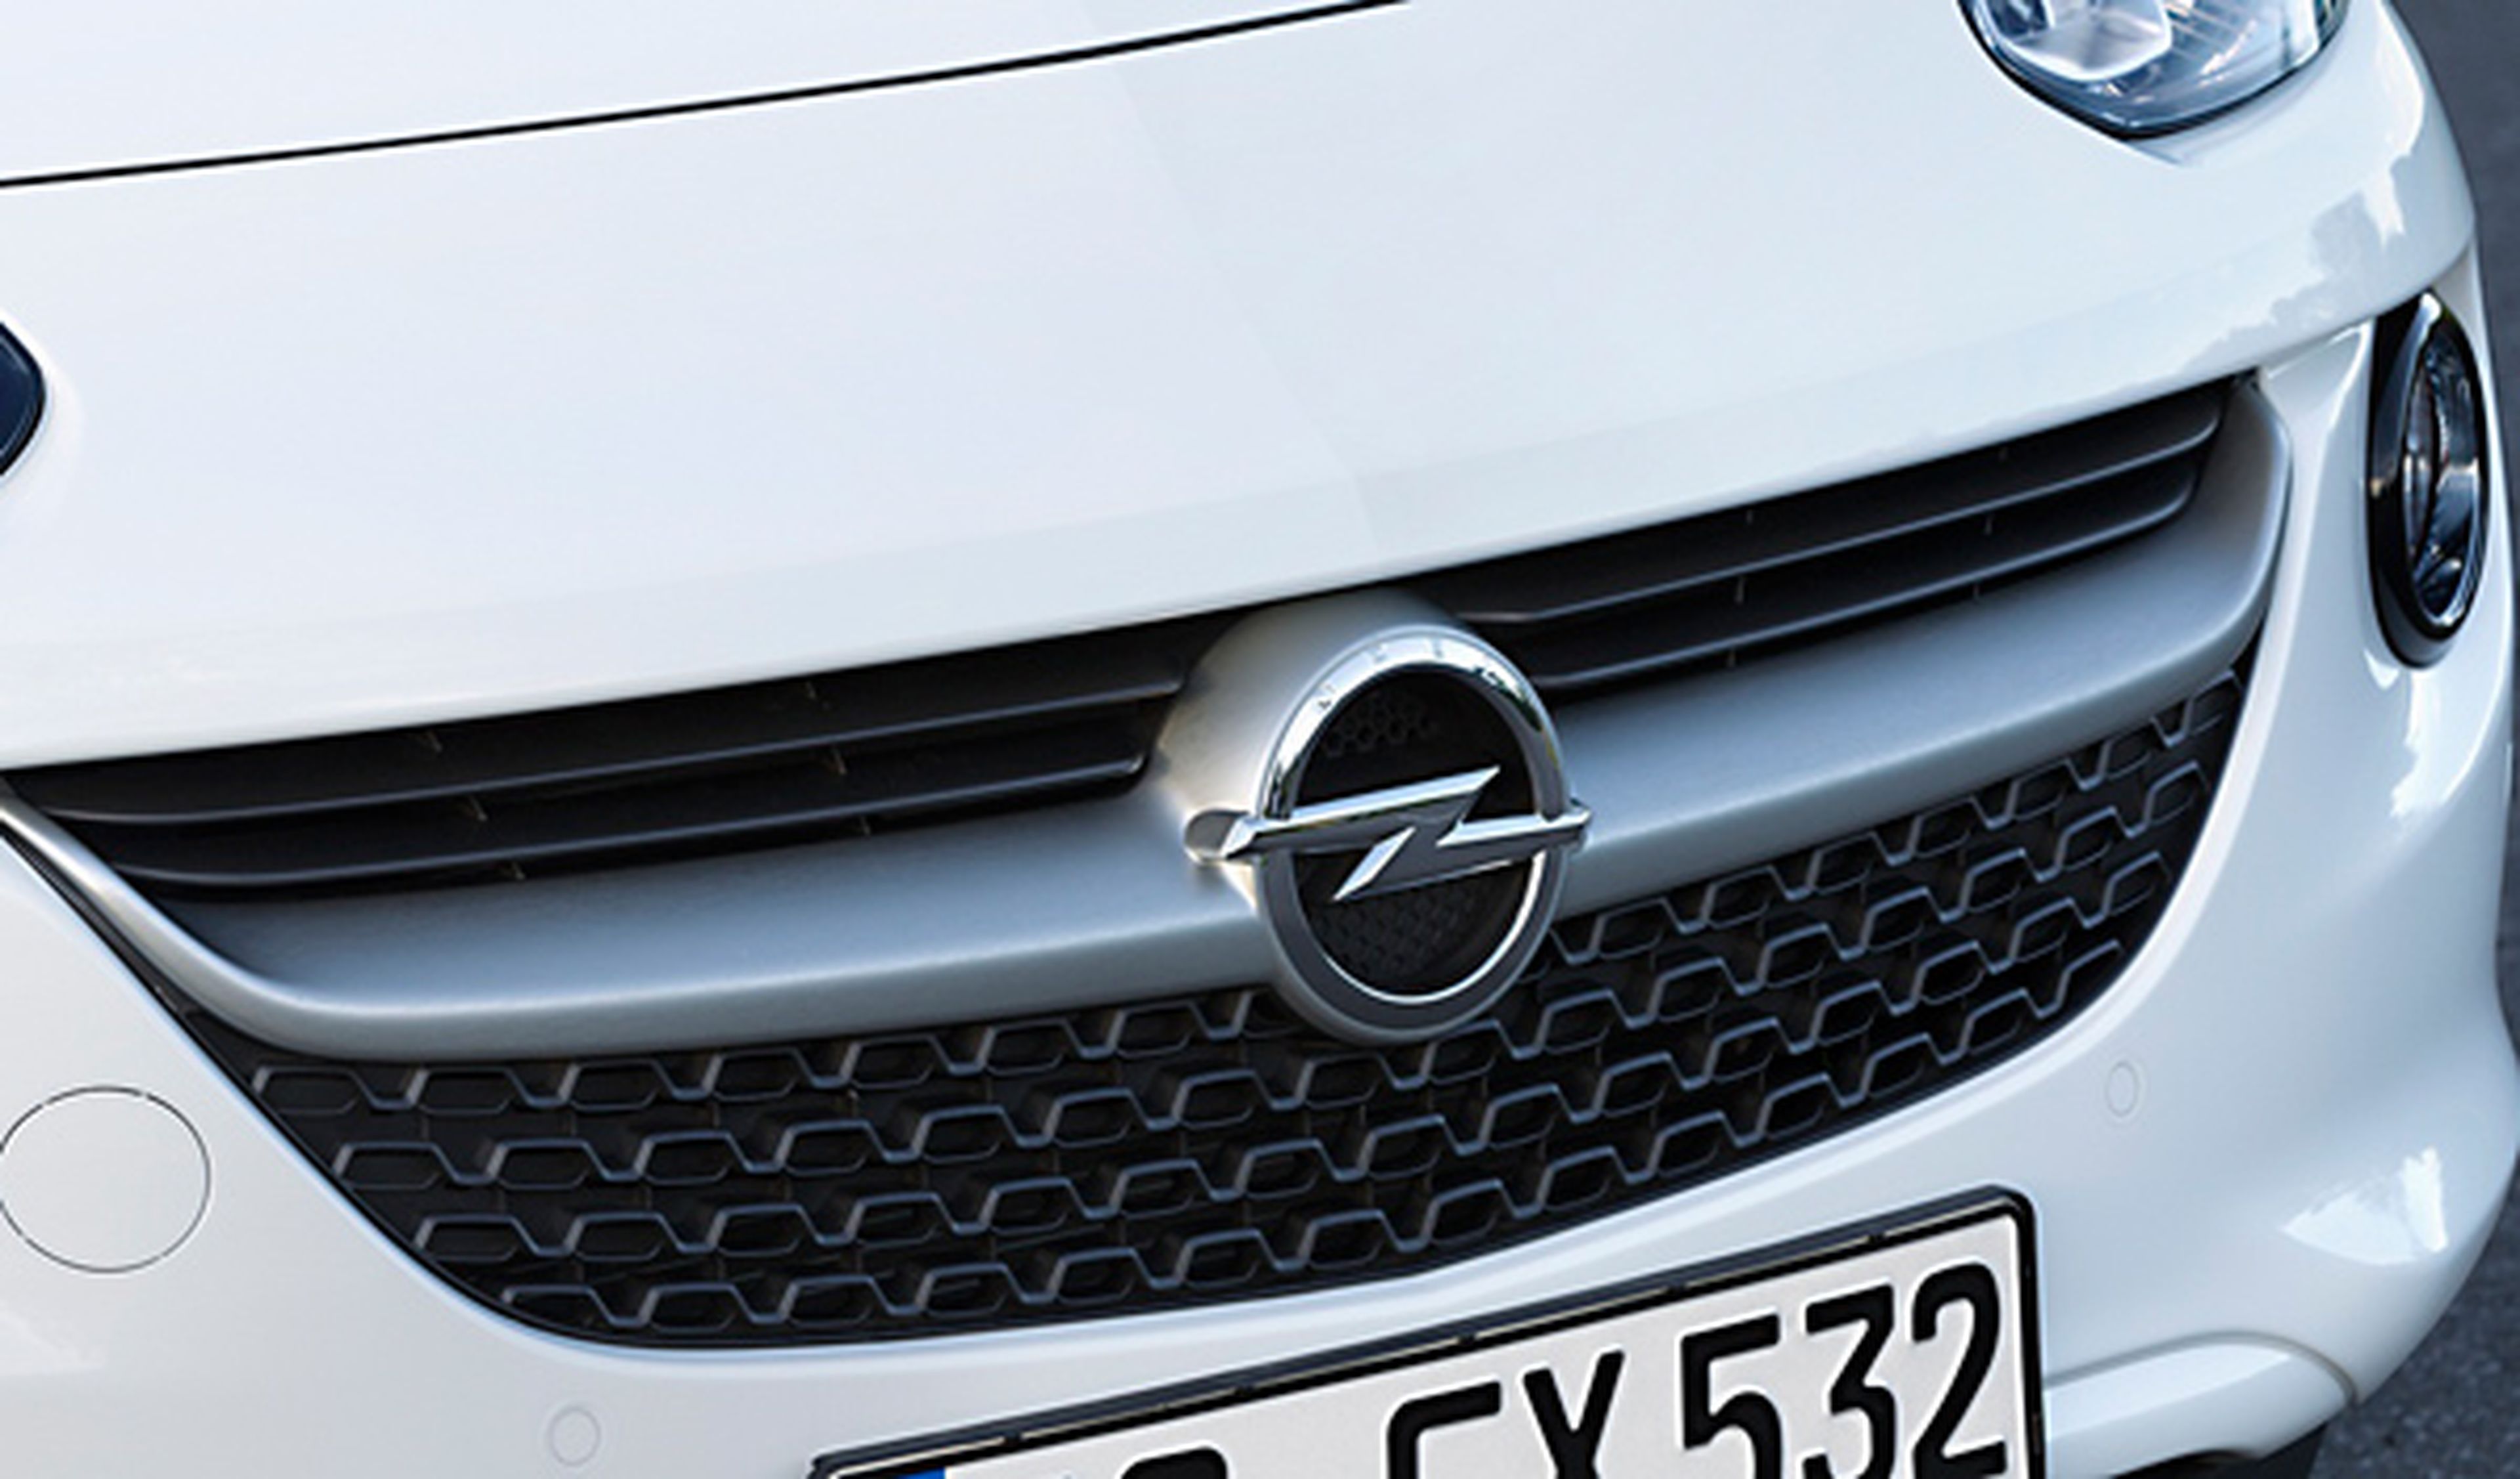 Calandra de la nueva versión del Opel Adam